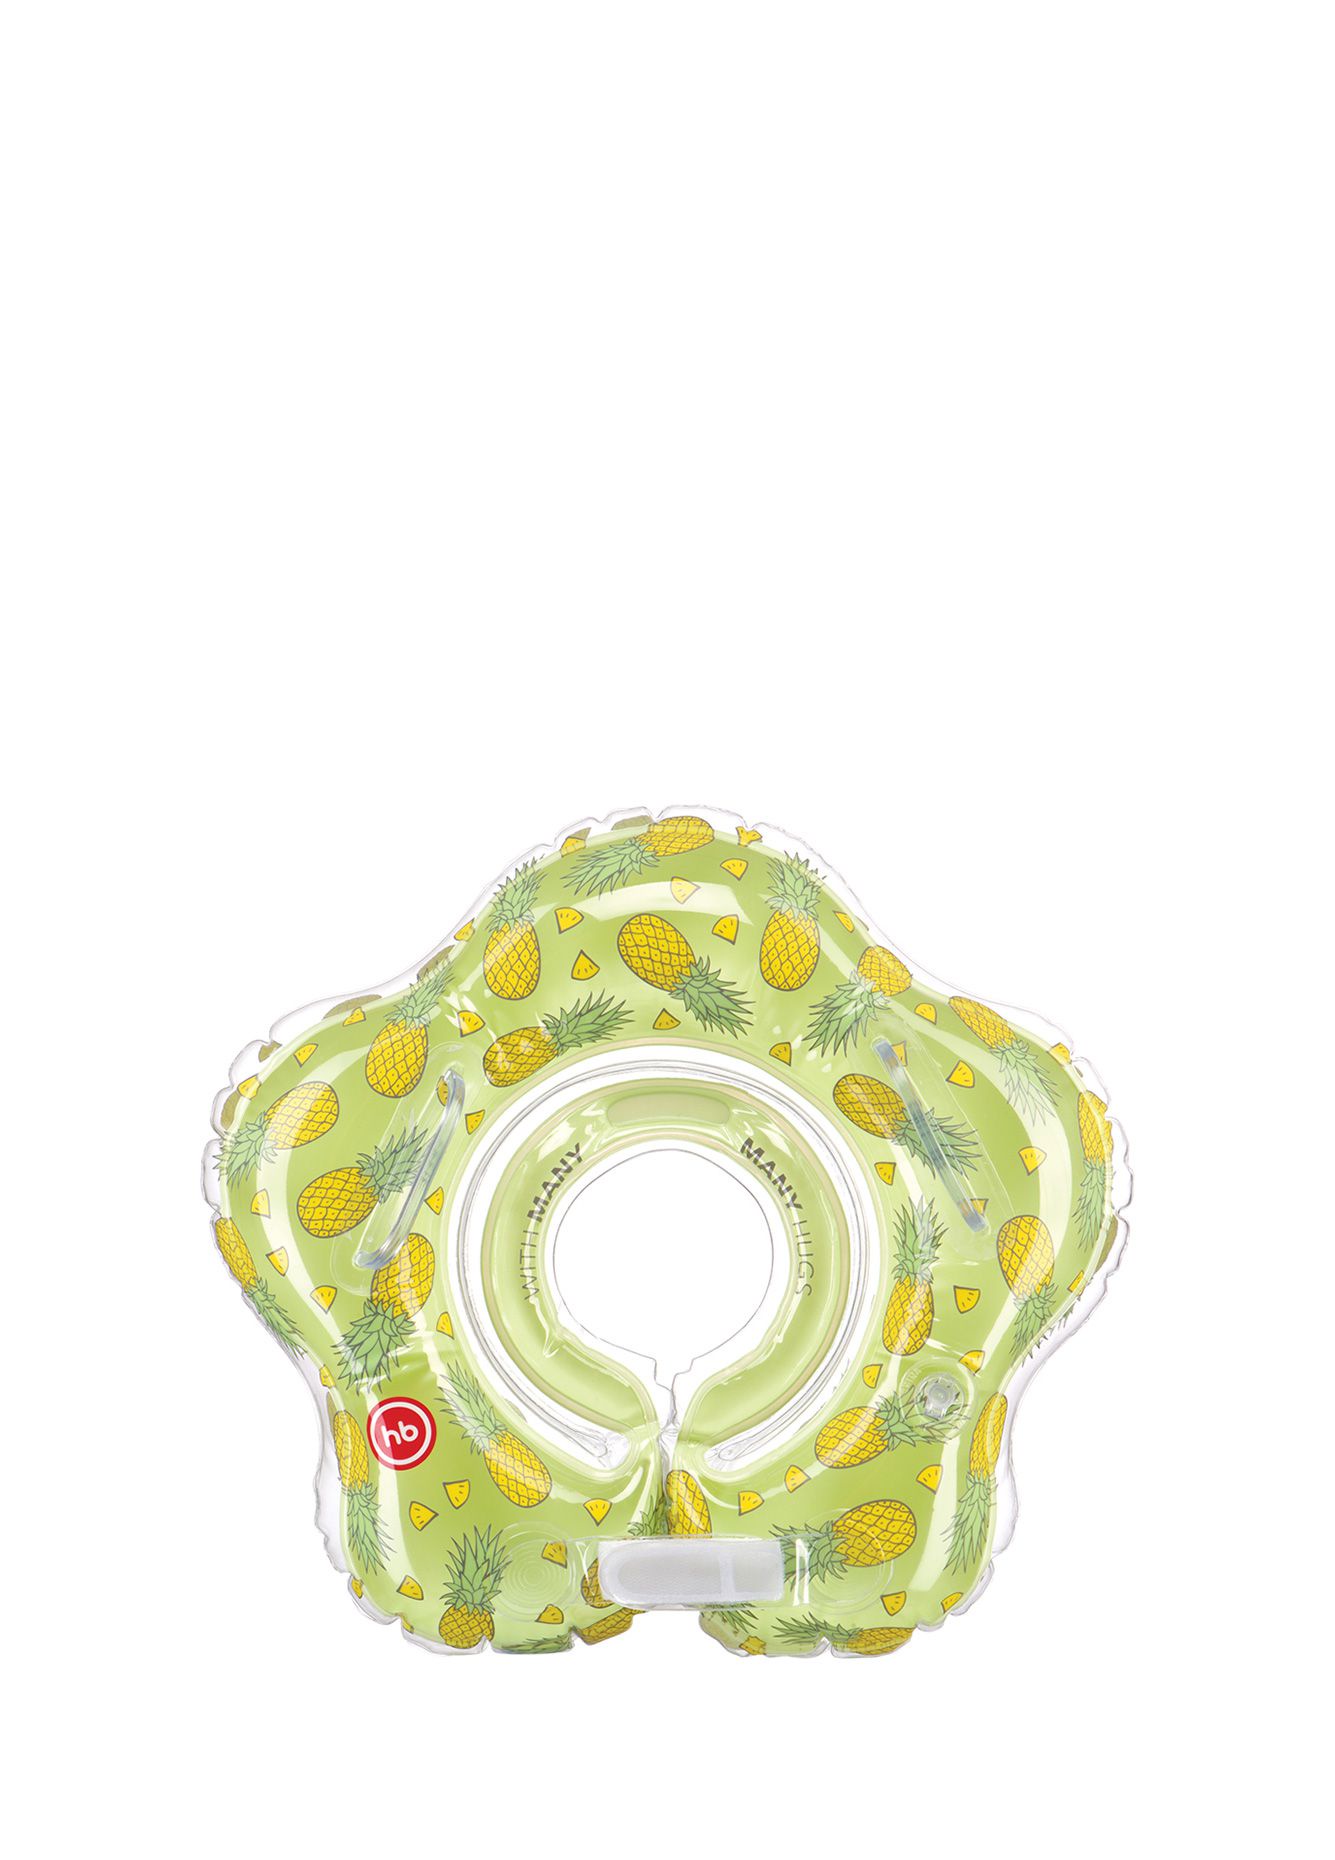 Круг для купания Happy Baby AQUAFUN зеленый